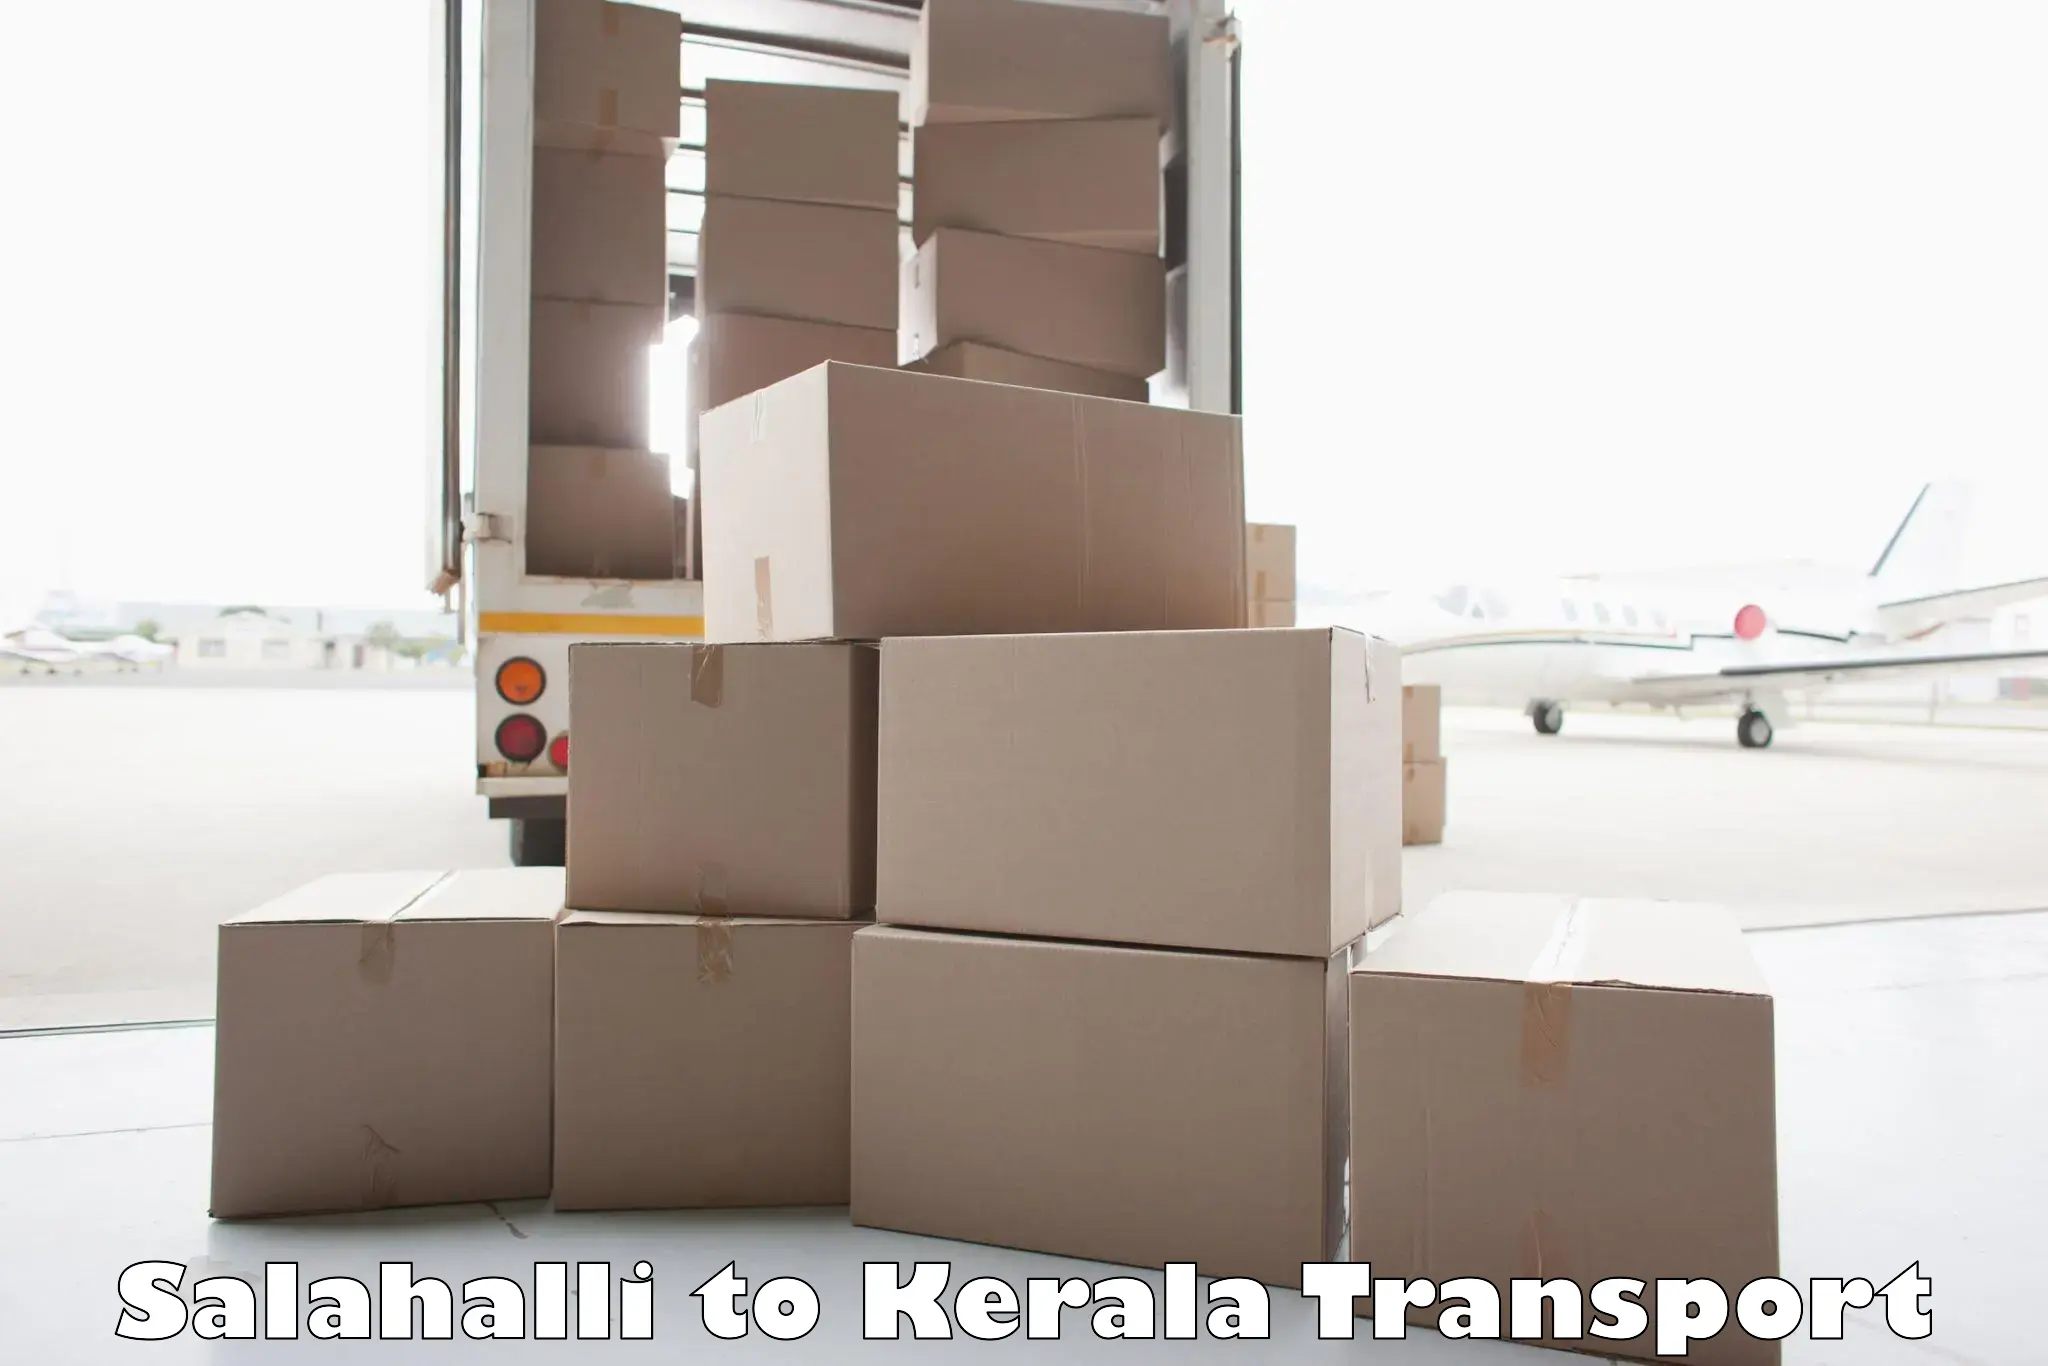 Truck transport companies in India Salahalli to Alakode